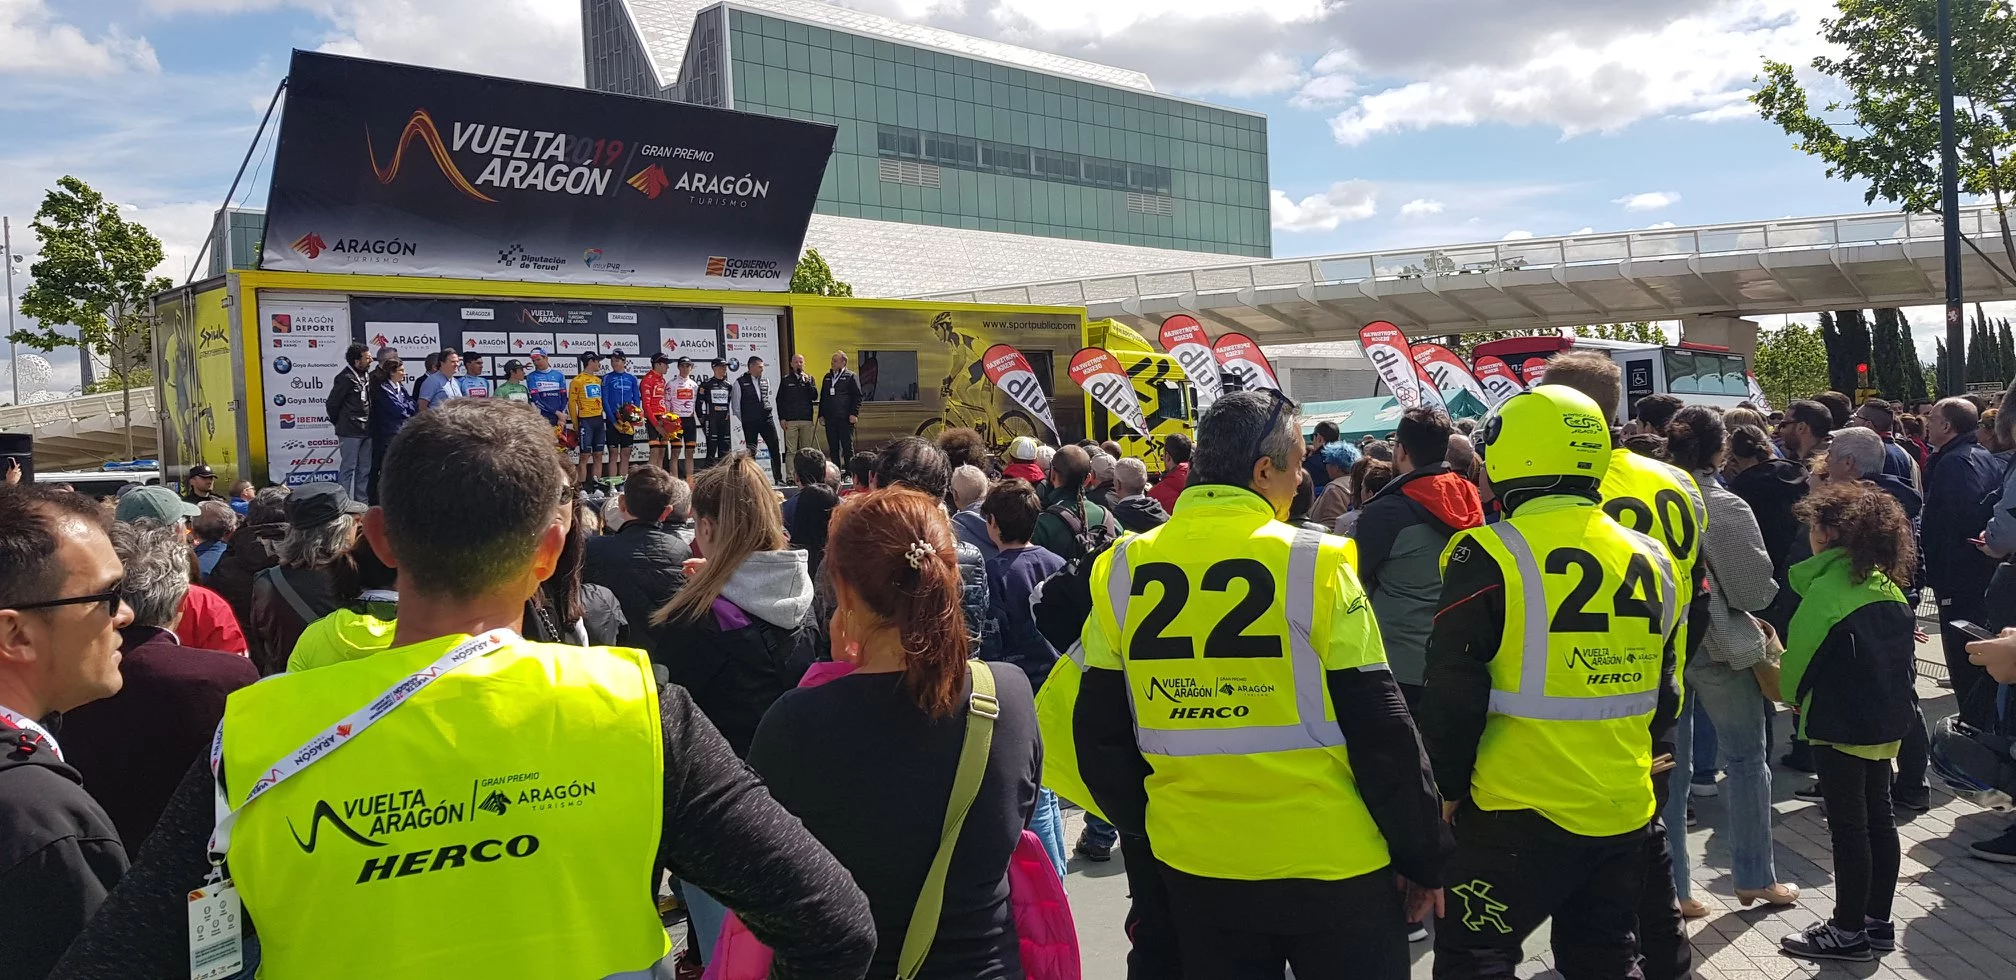 Suministros Herco y la Vuelta Aragón 2019